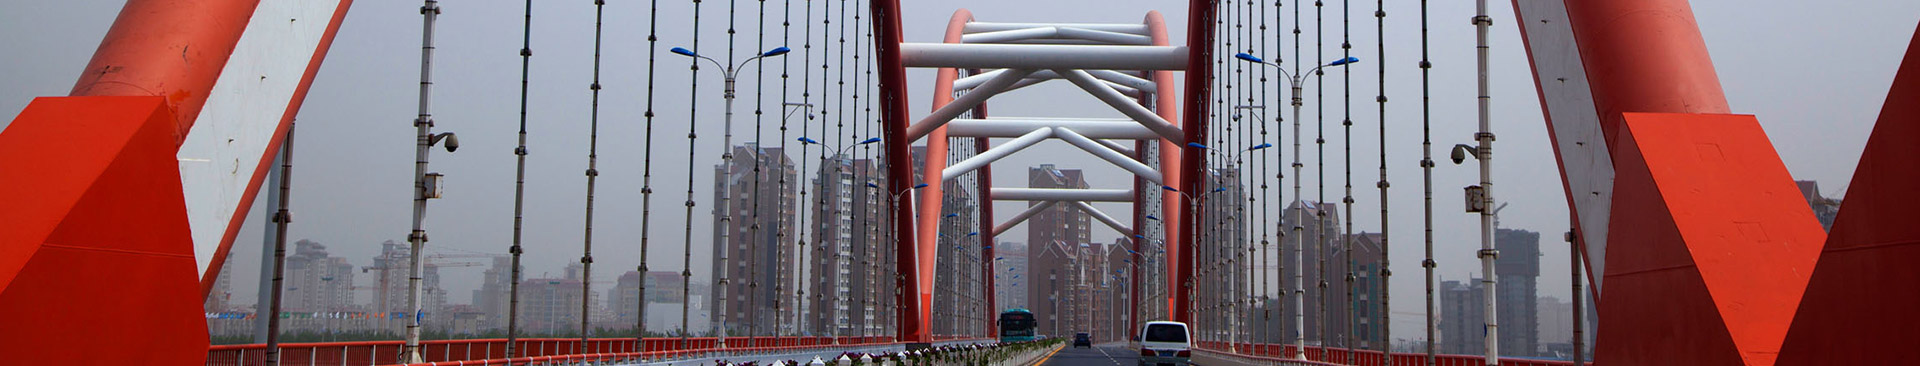 斯鼎钢结构防锈漆应用于大桥上